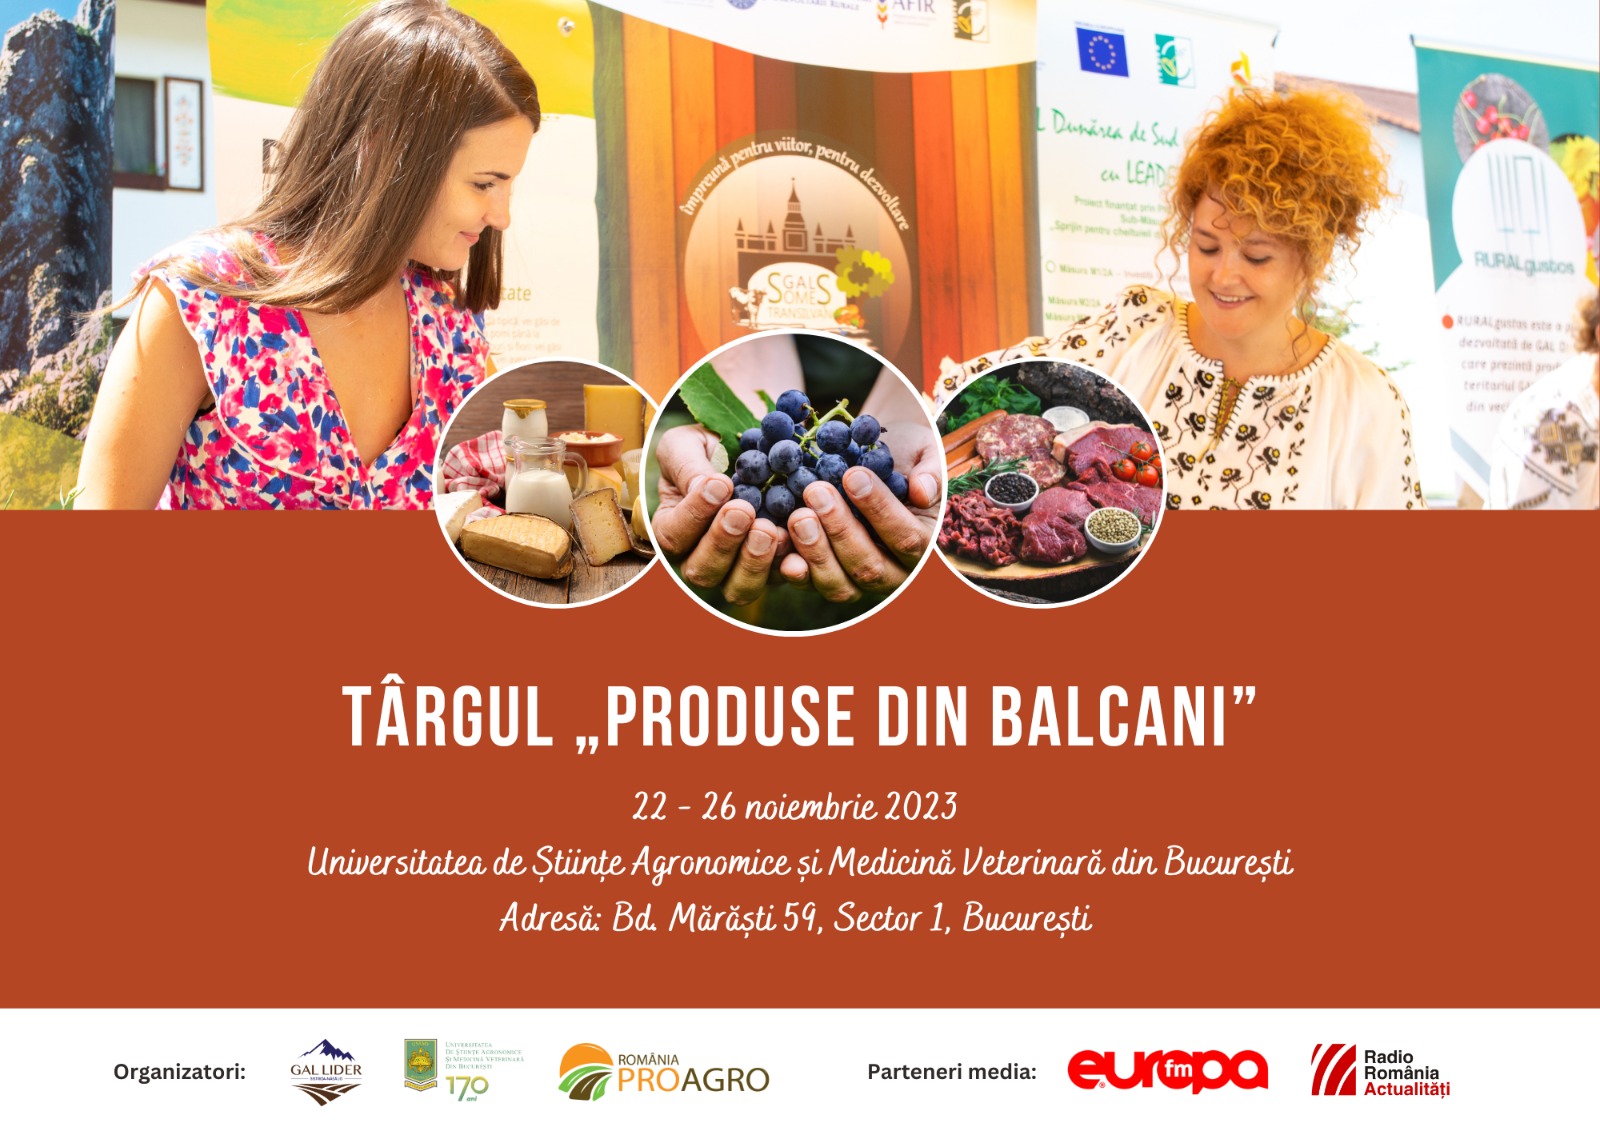 Târgul „Produse din Balcani” are loc la USAMV, între 22 și 26 noiembrie